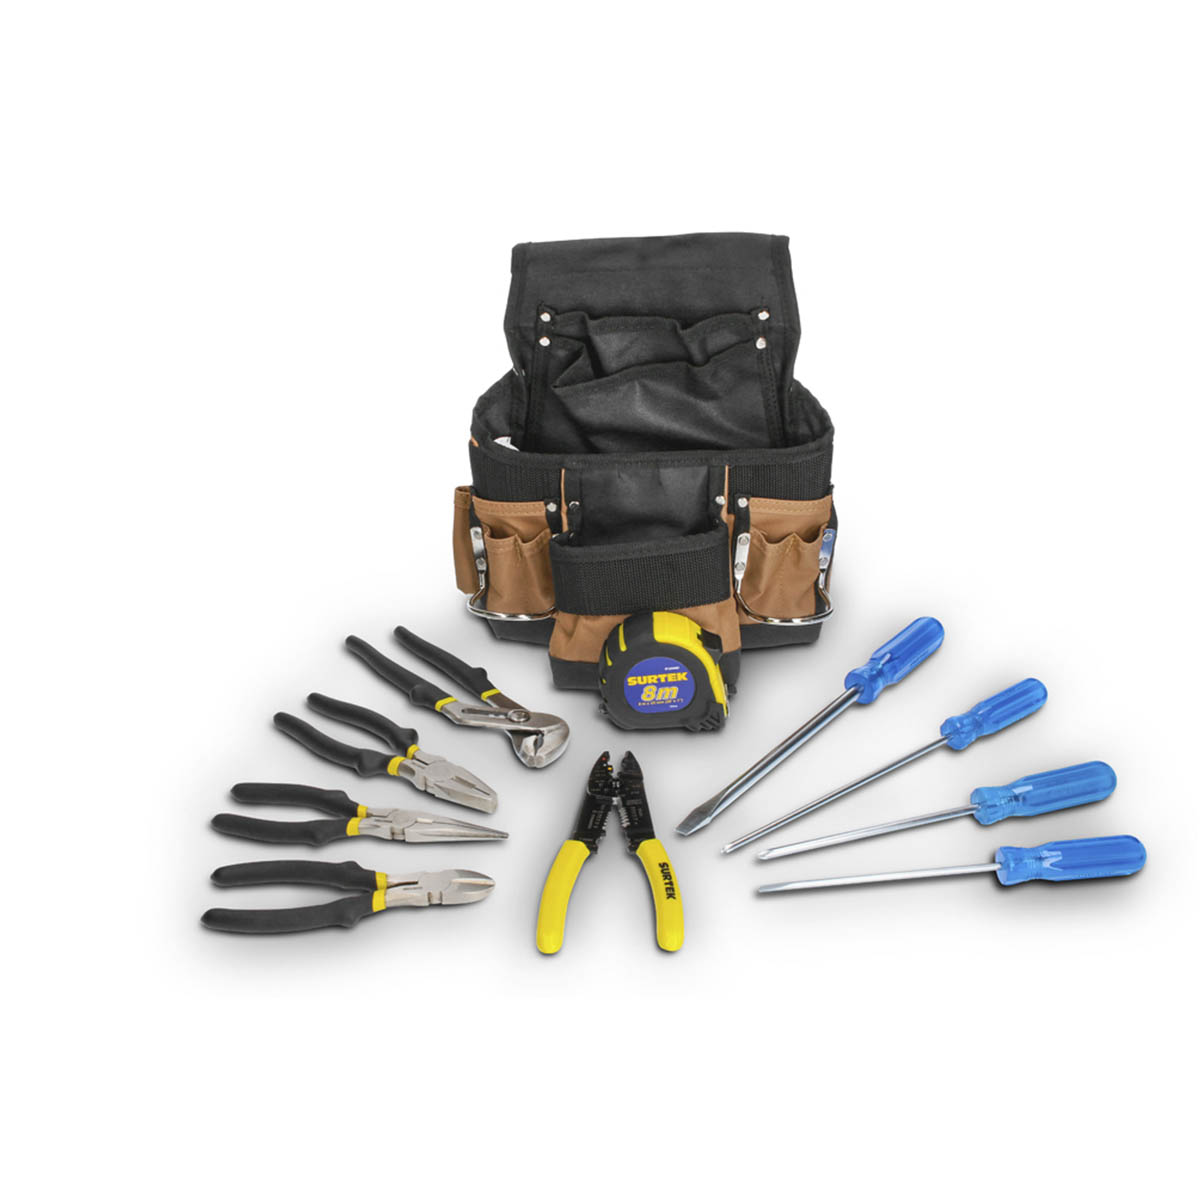 Porta herramientas + Destornilladores + Pinzas + Flexometro